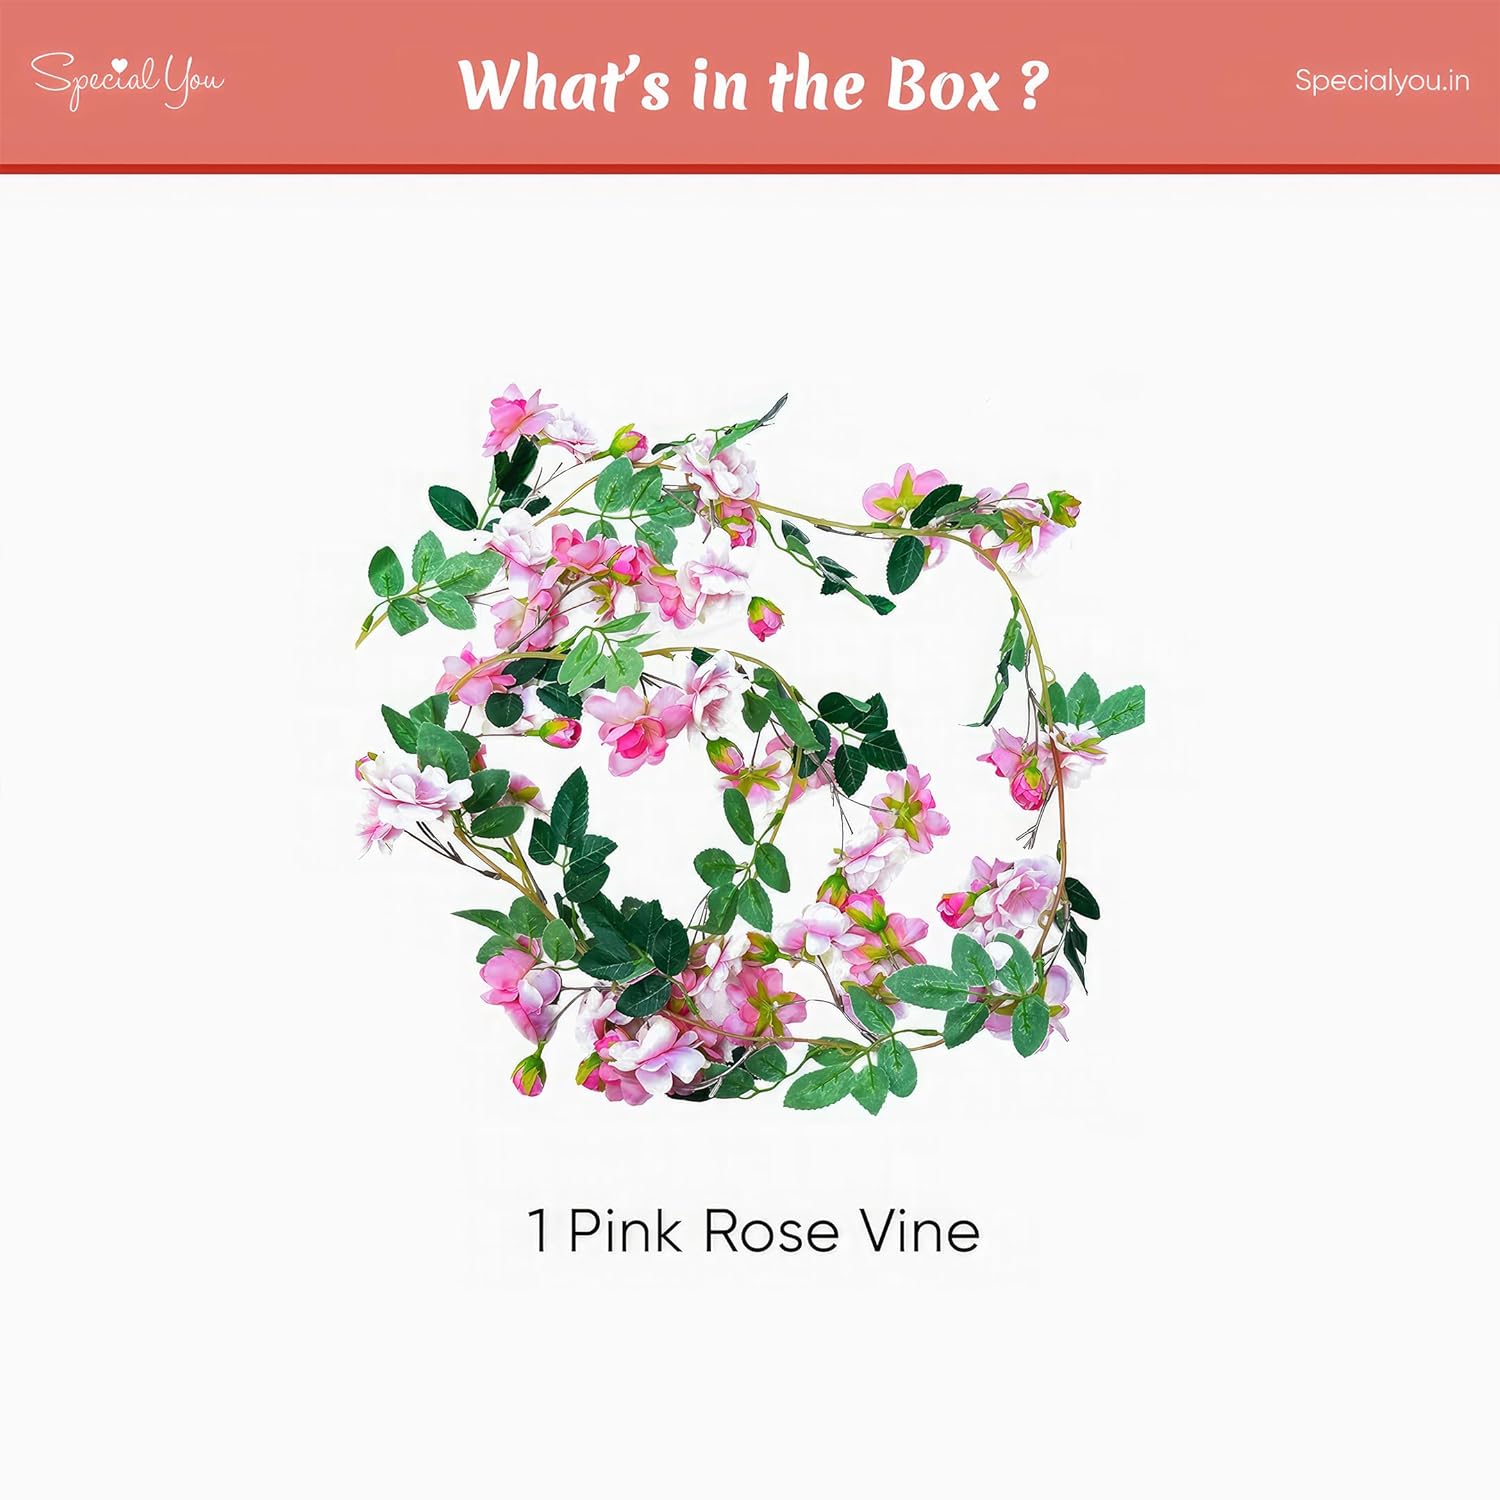 1 pink rose vine